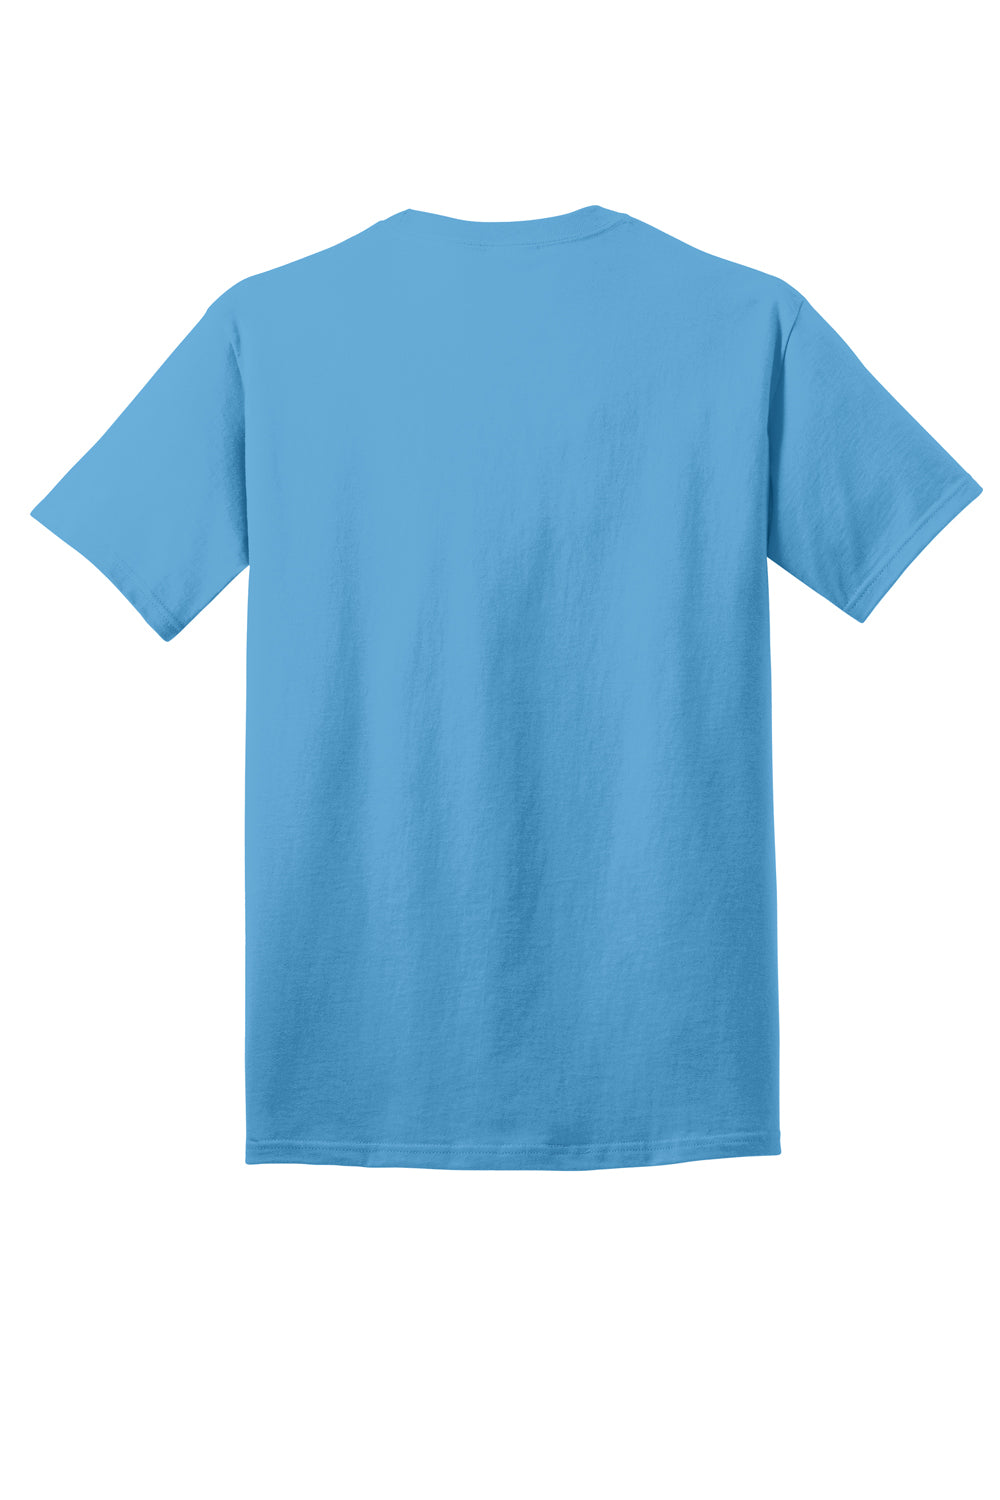 Port & Company PC54DTG Core Cotton DTG Short Sleeve Crewneck T-Shirt Aquatic Blue Flat Back